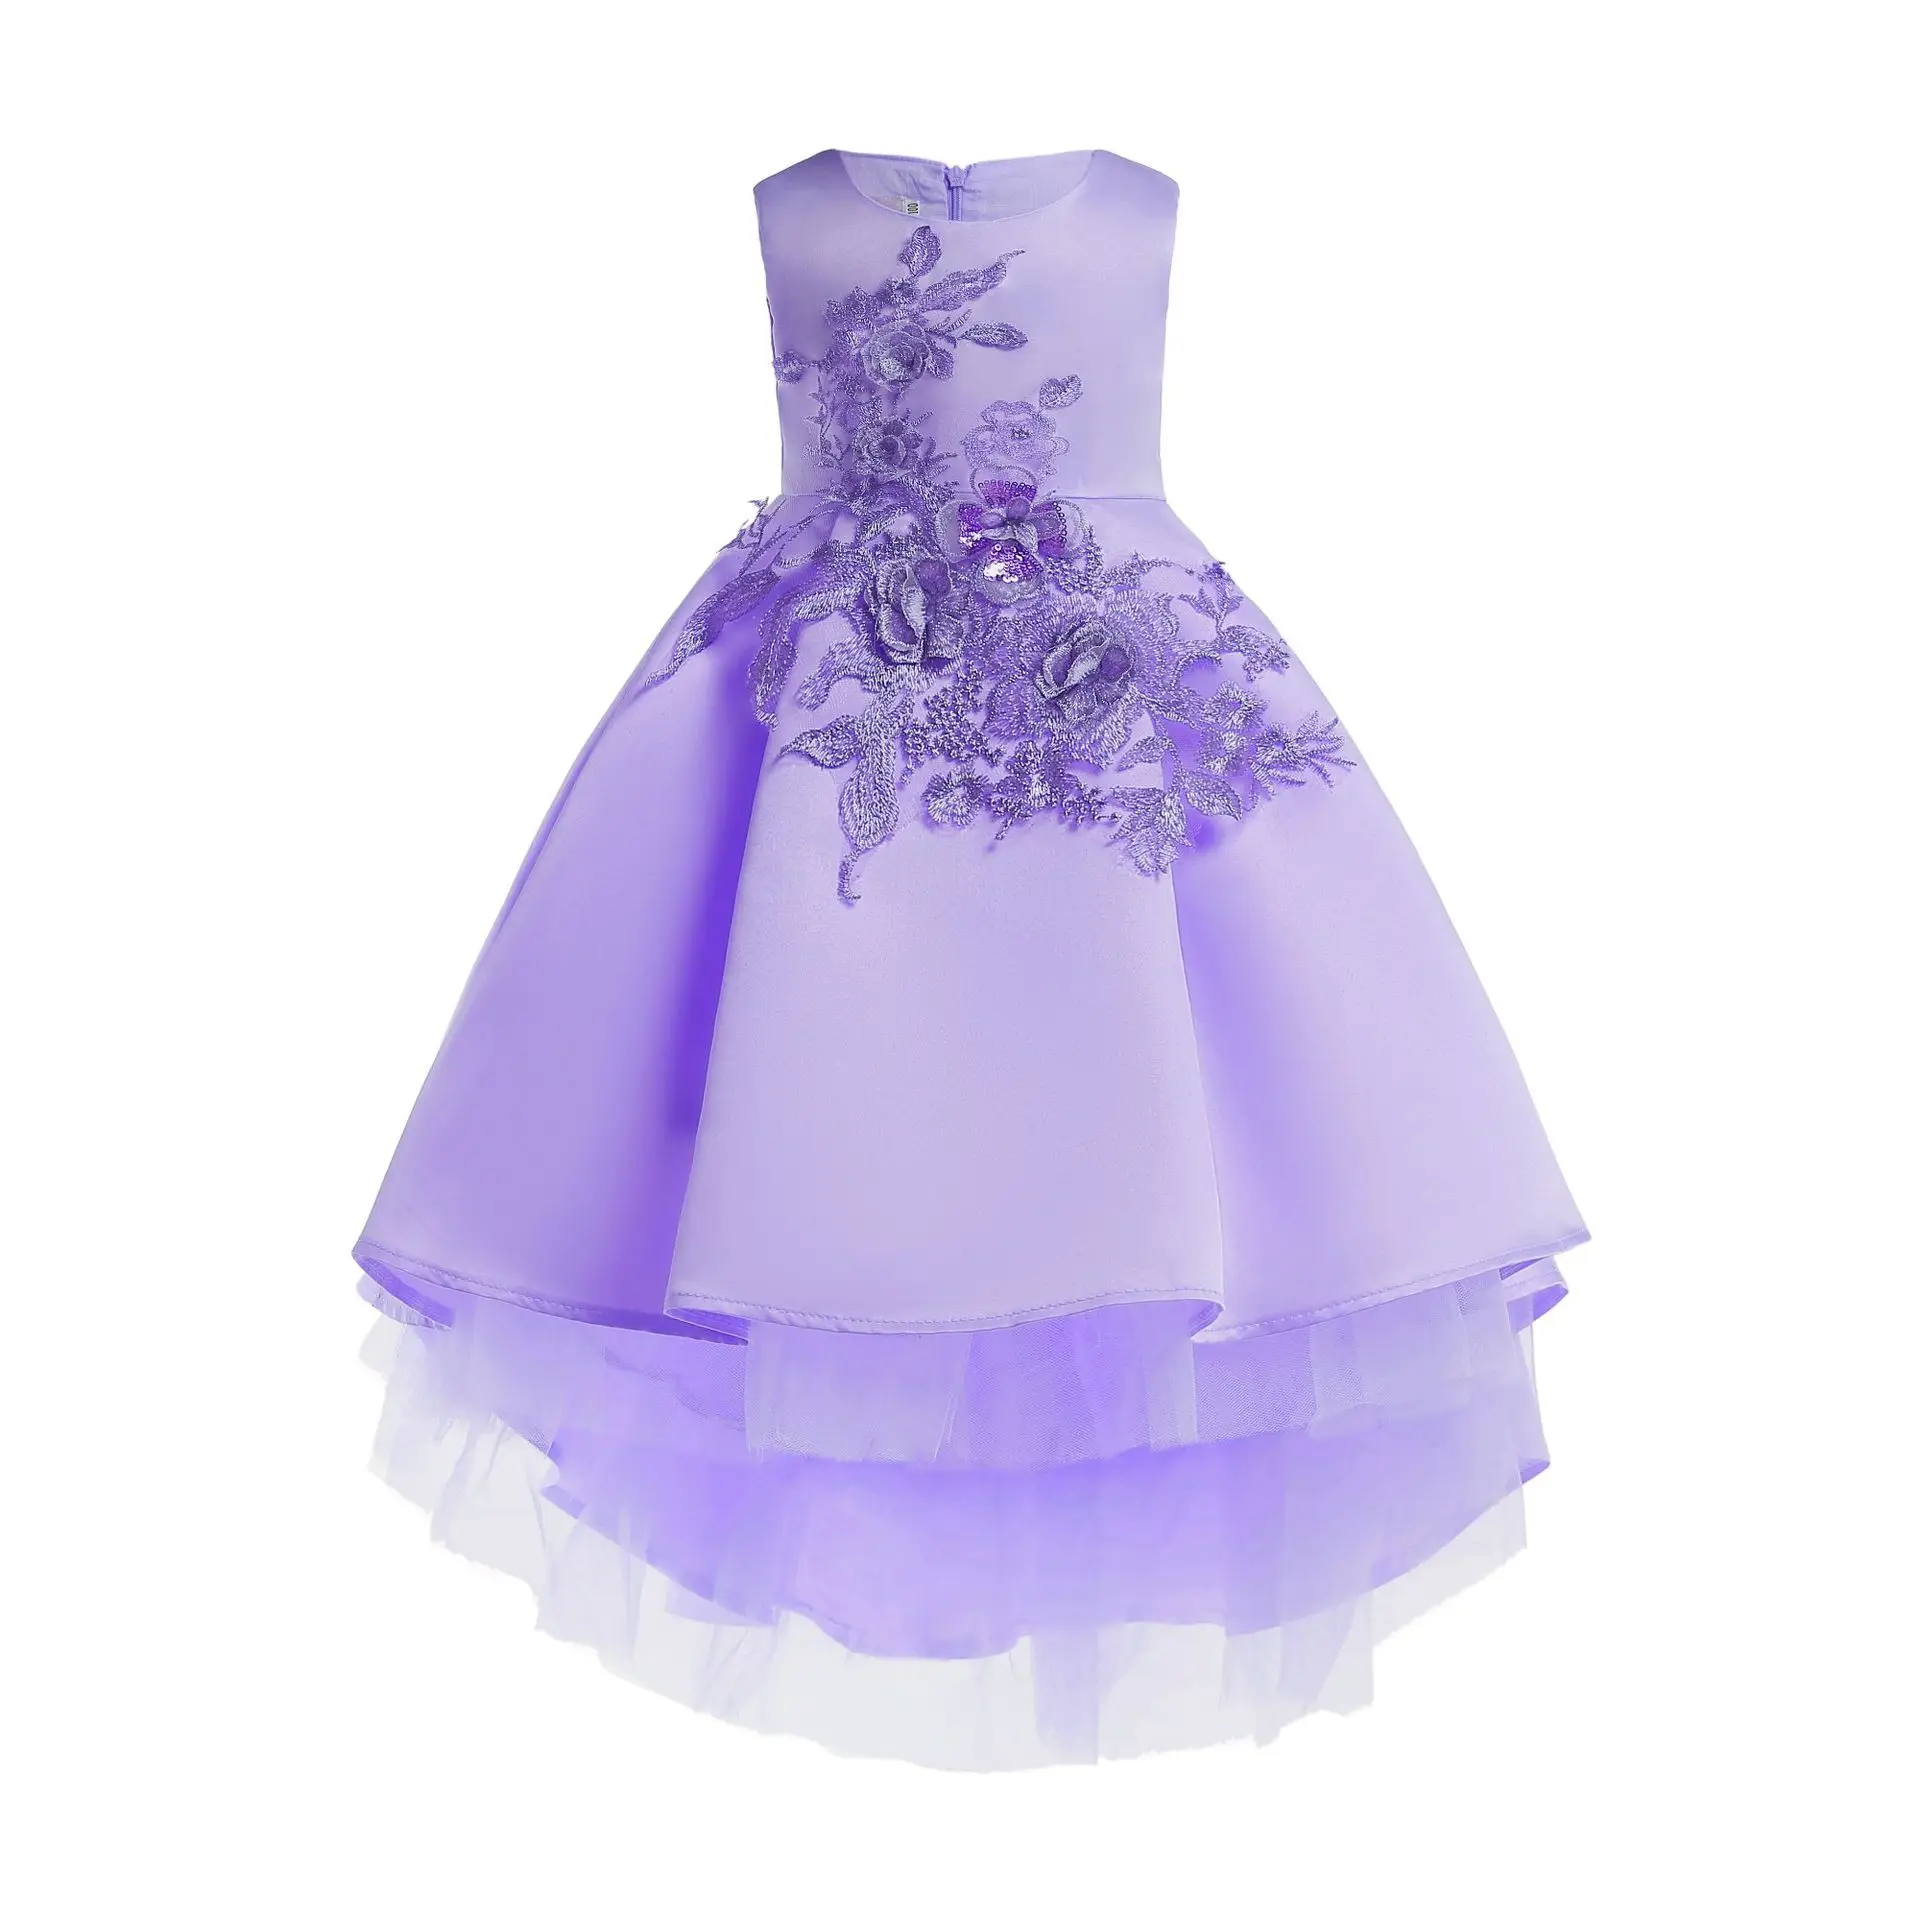 ; ; платье с бантом и цветами на одно плечо для девочек летнее платье в полоску для больших девочек праздничная одежда на День святого Валентина - Цвет: 2650 lavender